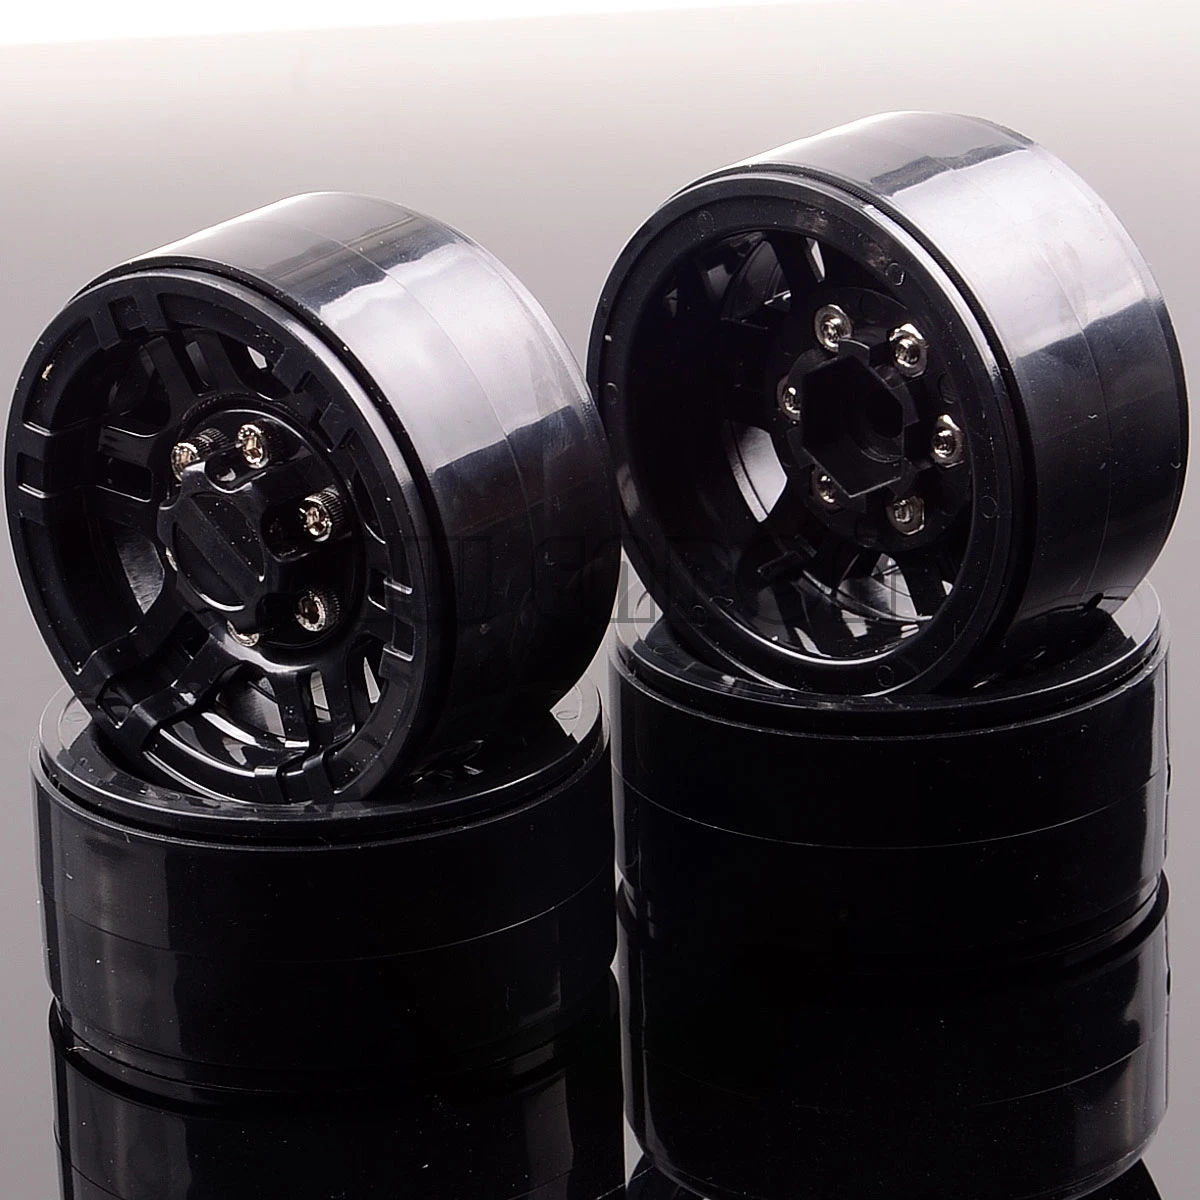 ENRON 4P 1,9 дюймов Beadlock колеса концентратор для RC 1:10 1/10 Рок Гусеничный Gmade D90 SCX10 осевой CC01 MST jimny TF2 D110 - Цвет: Black